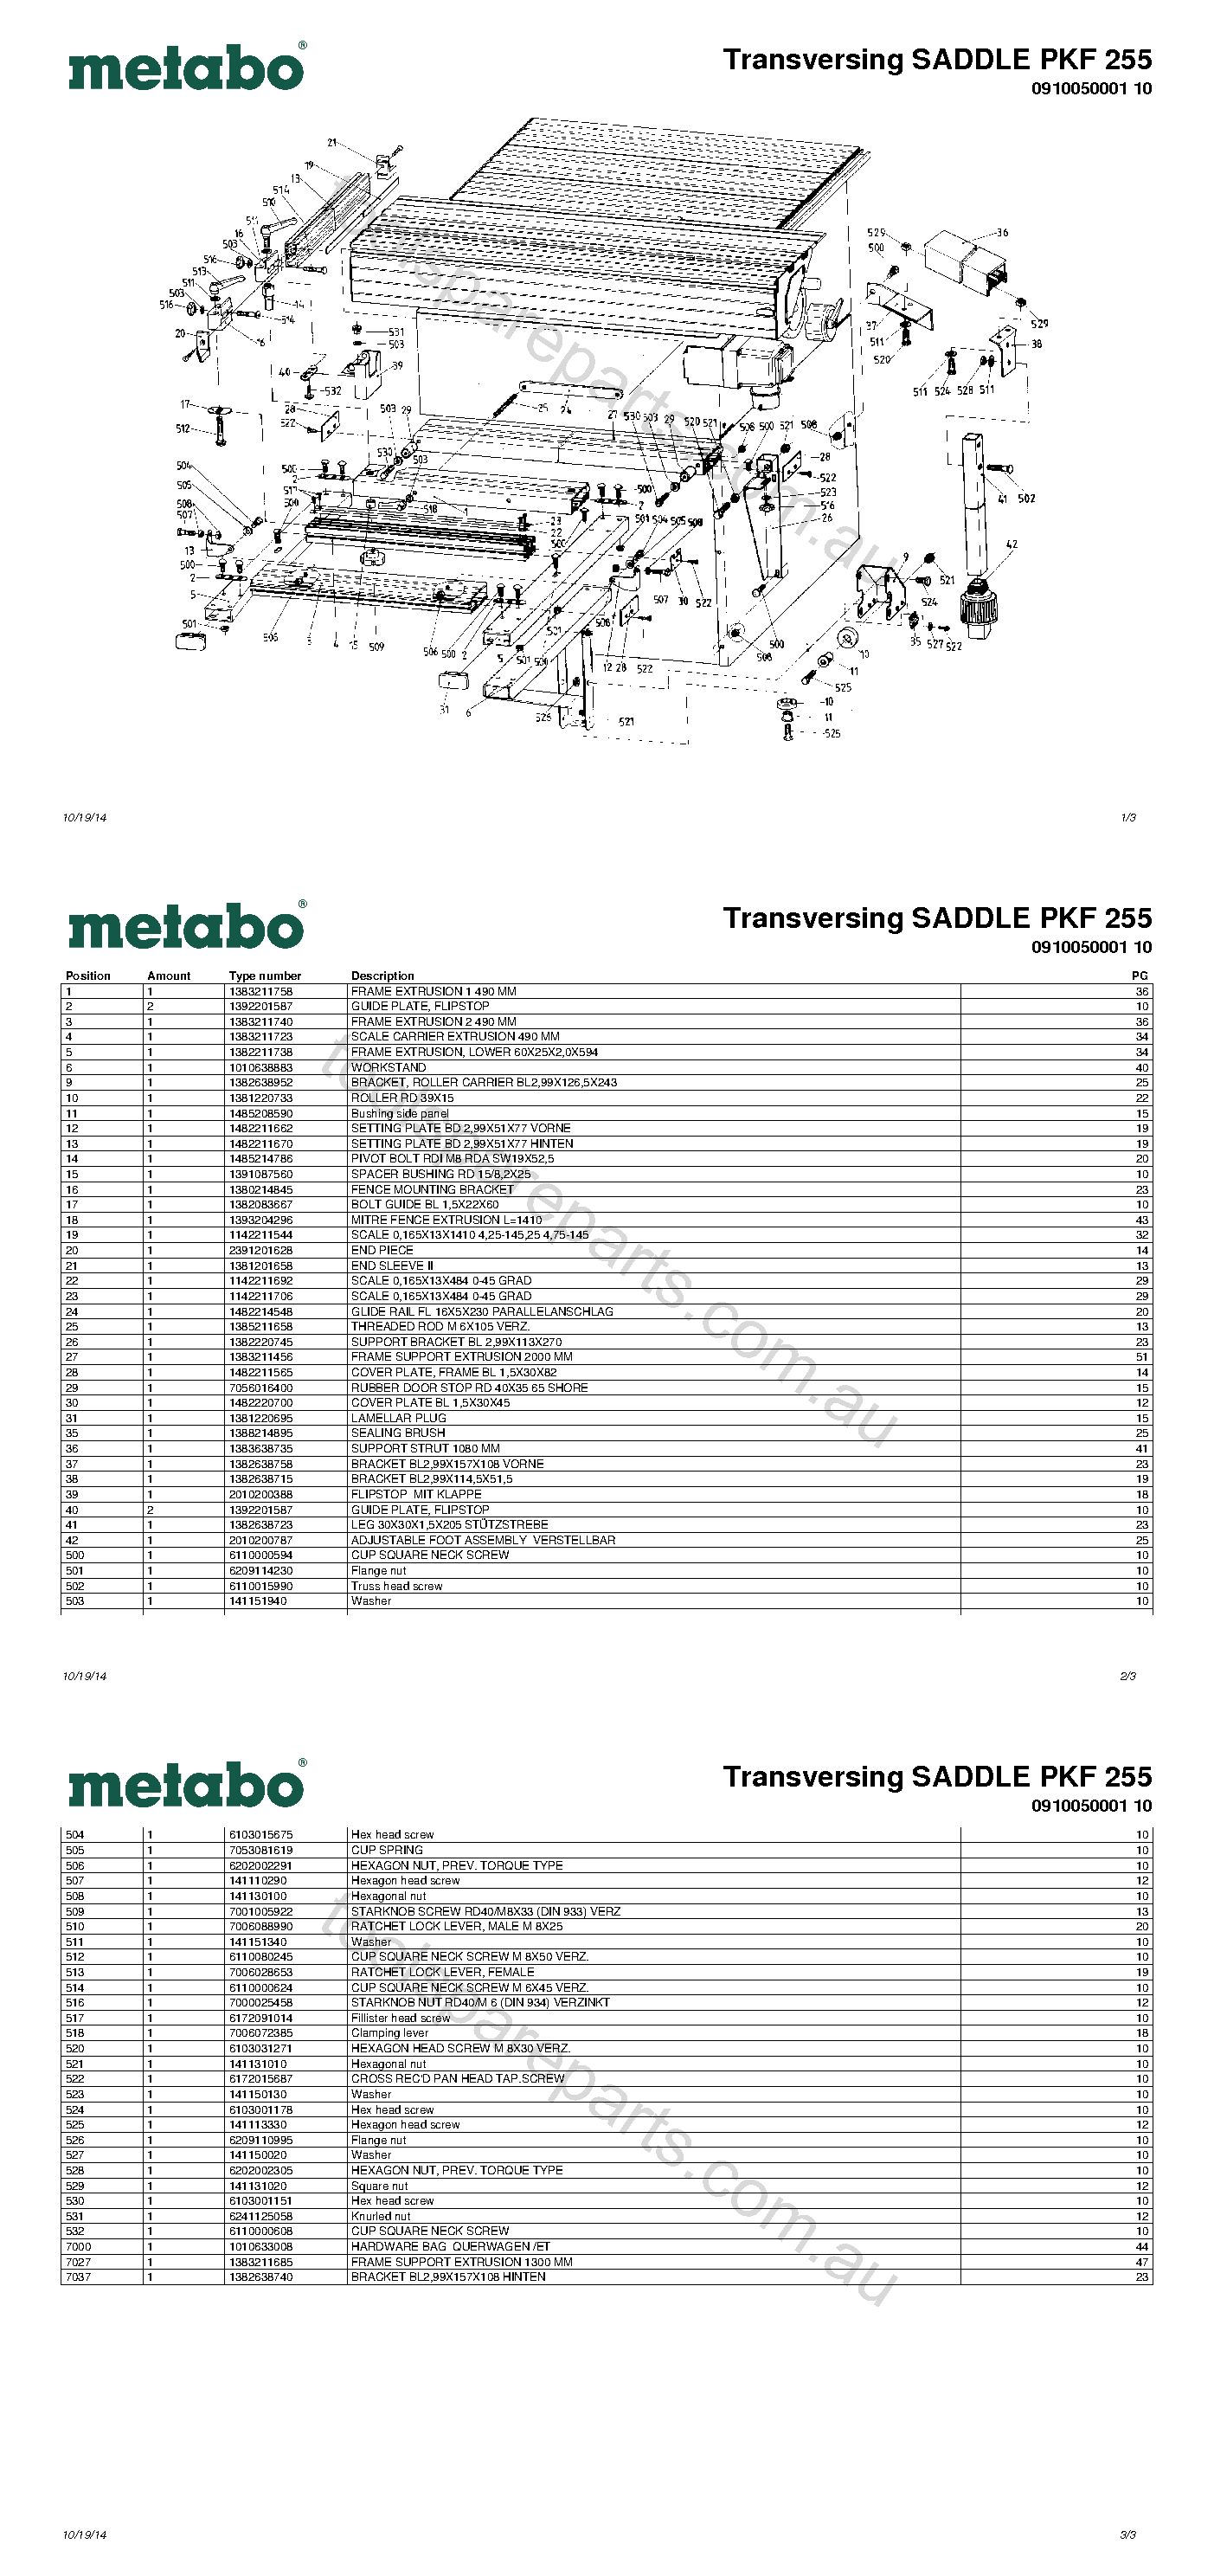 Metabo Transversing SADDLE PKF 255 0910050001 10  Diagram 1